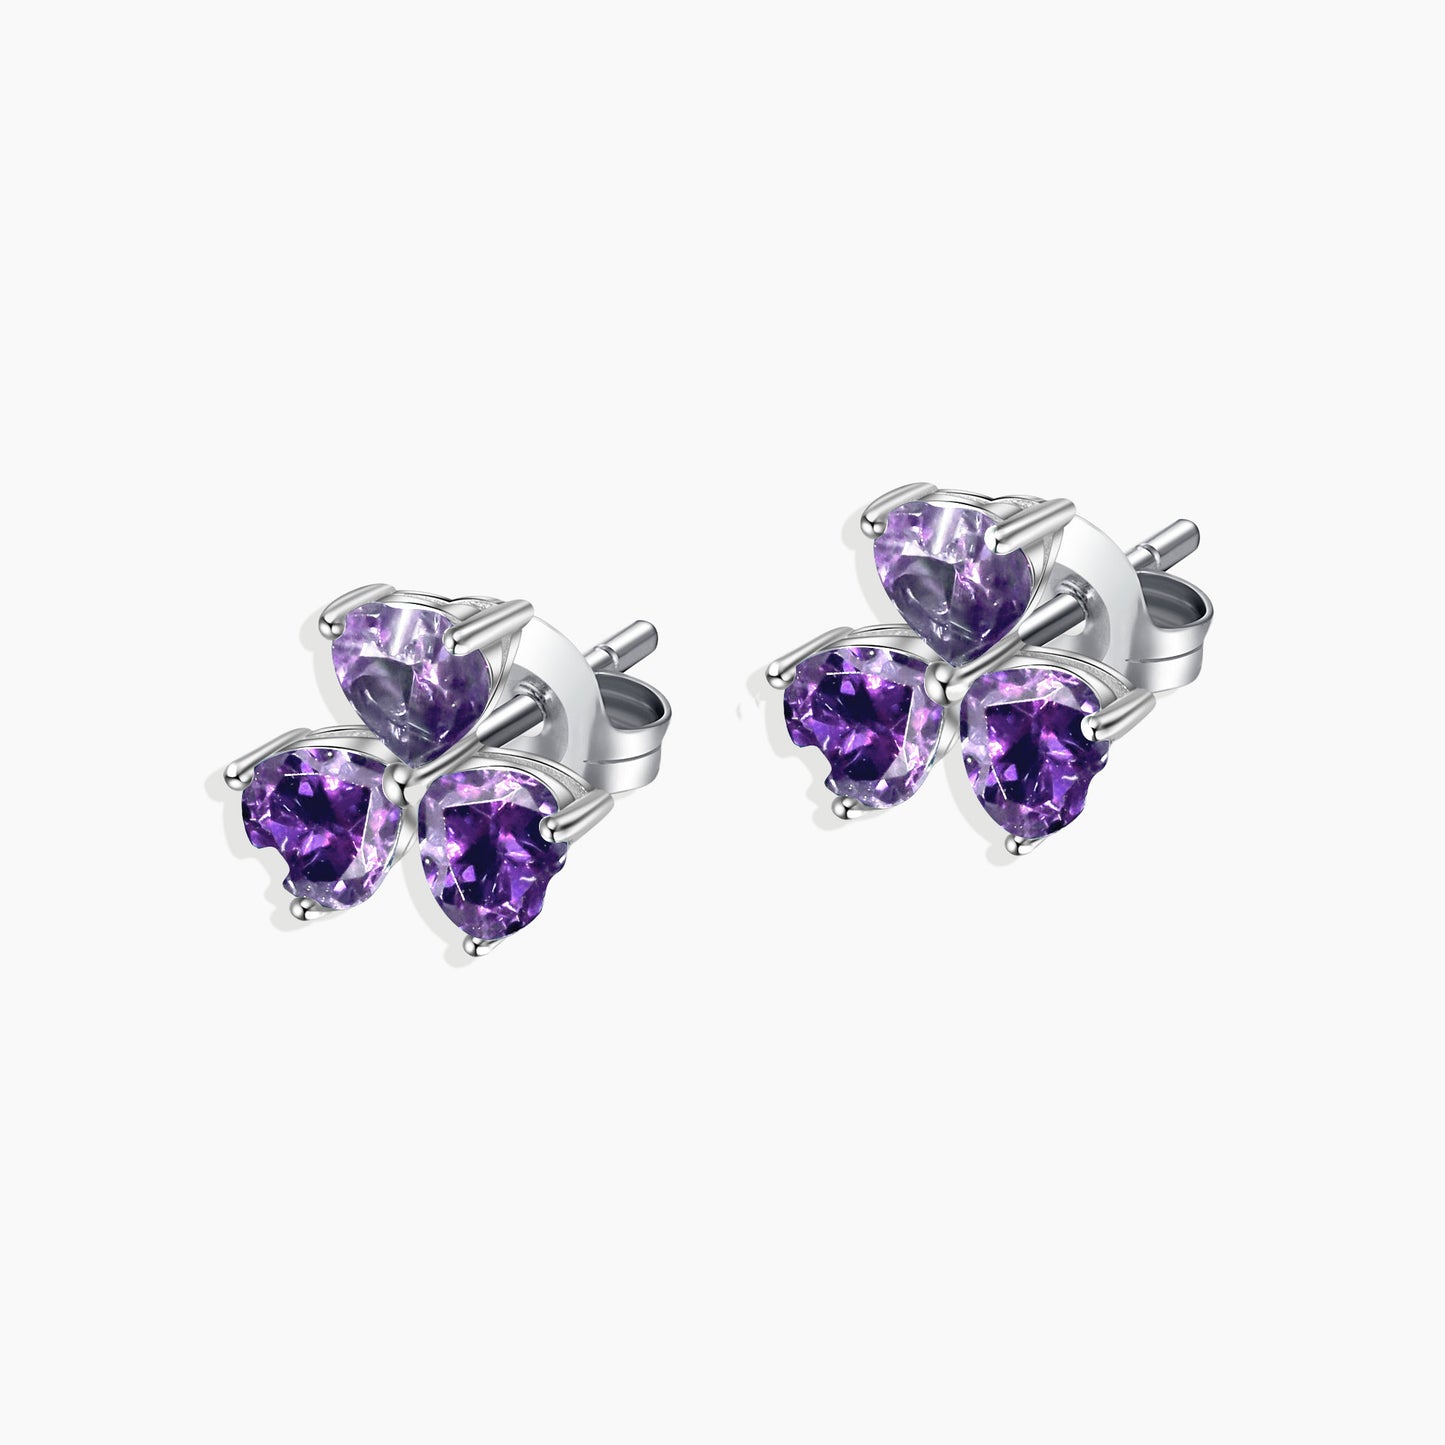 Flower Shape Stud Earrings in Sterling Silver -  Amethyst